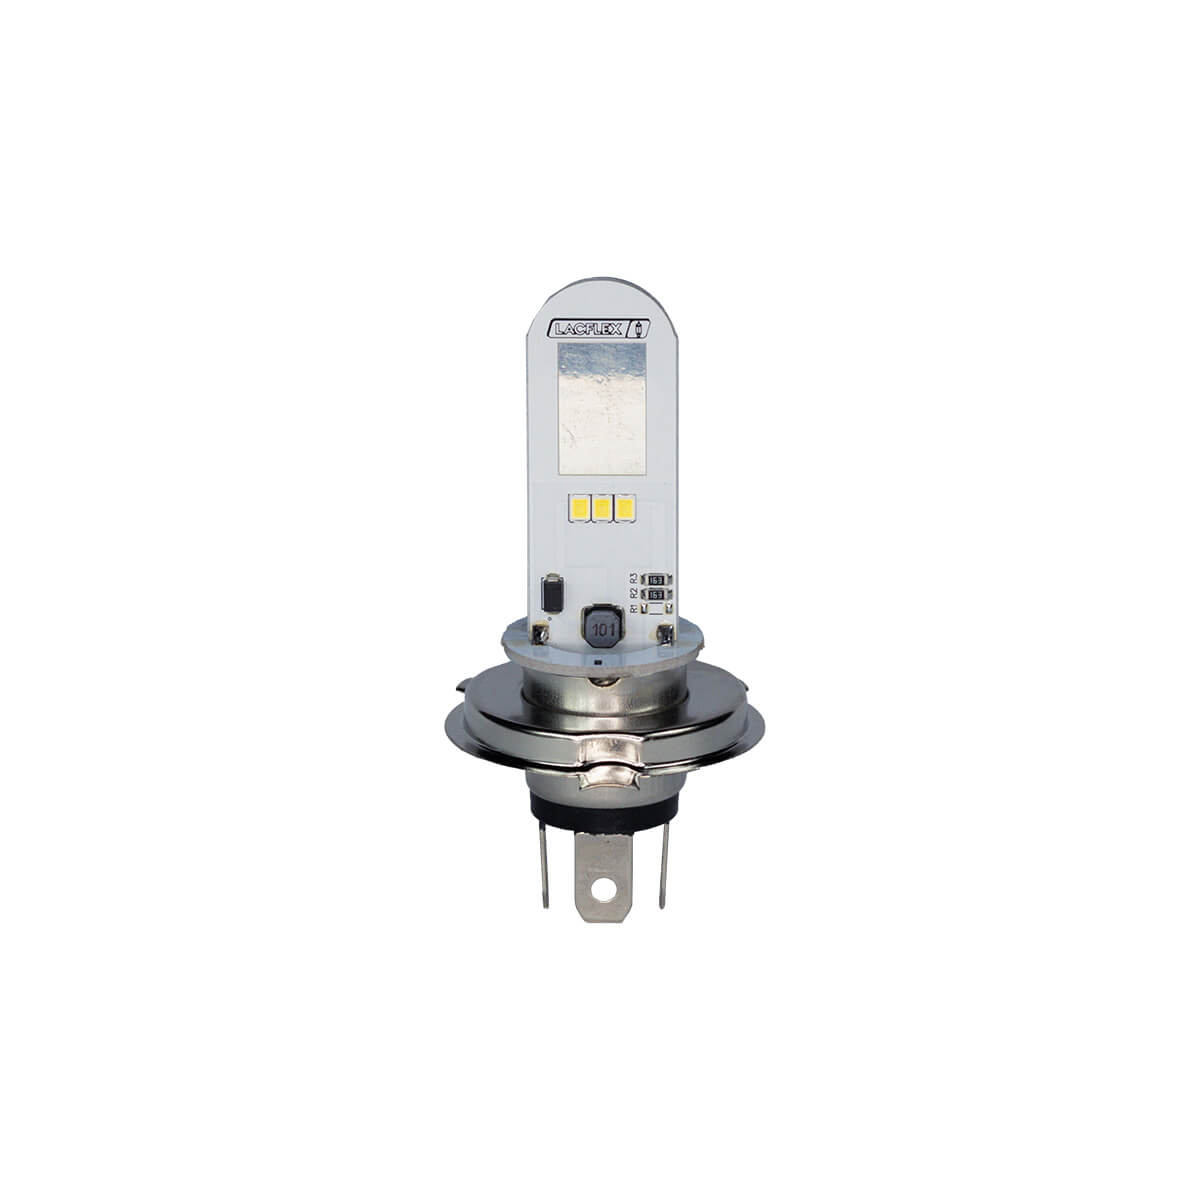 LAMPADA FAROL LACFLEX LED H4 12V 9W AC/DC